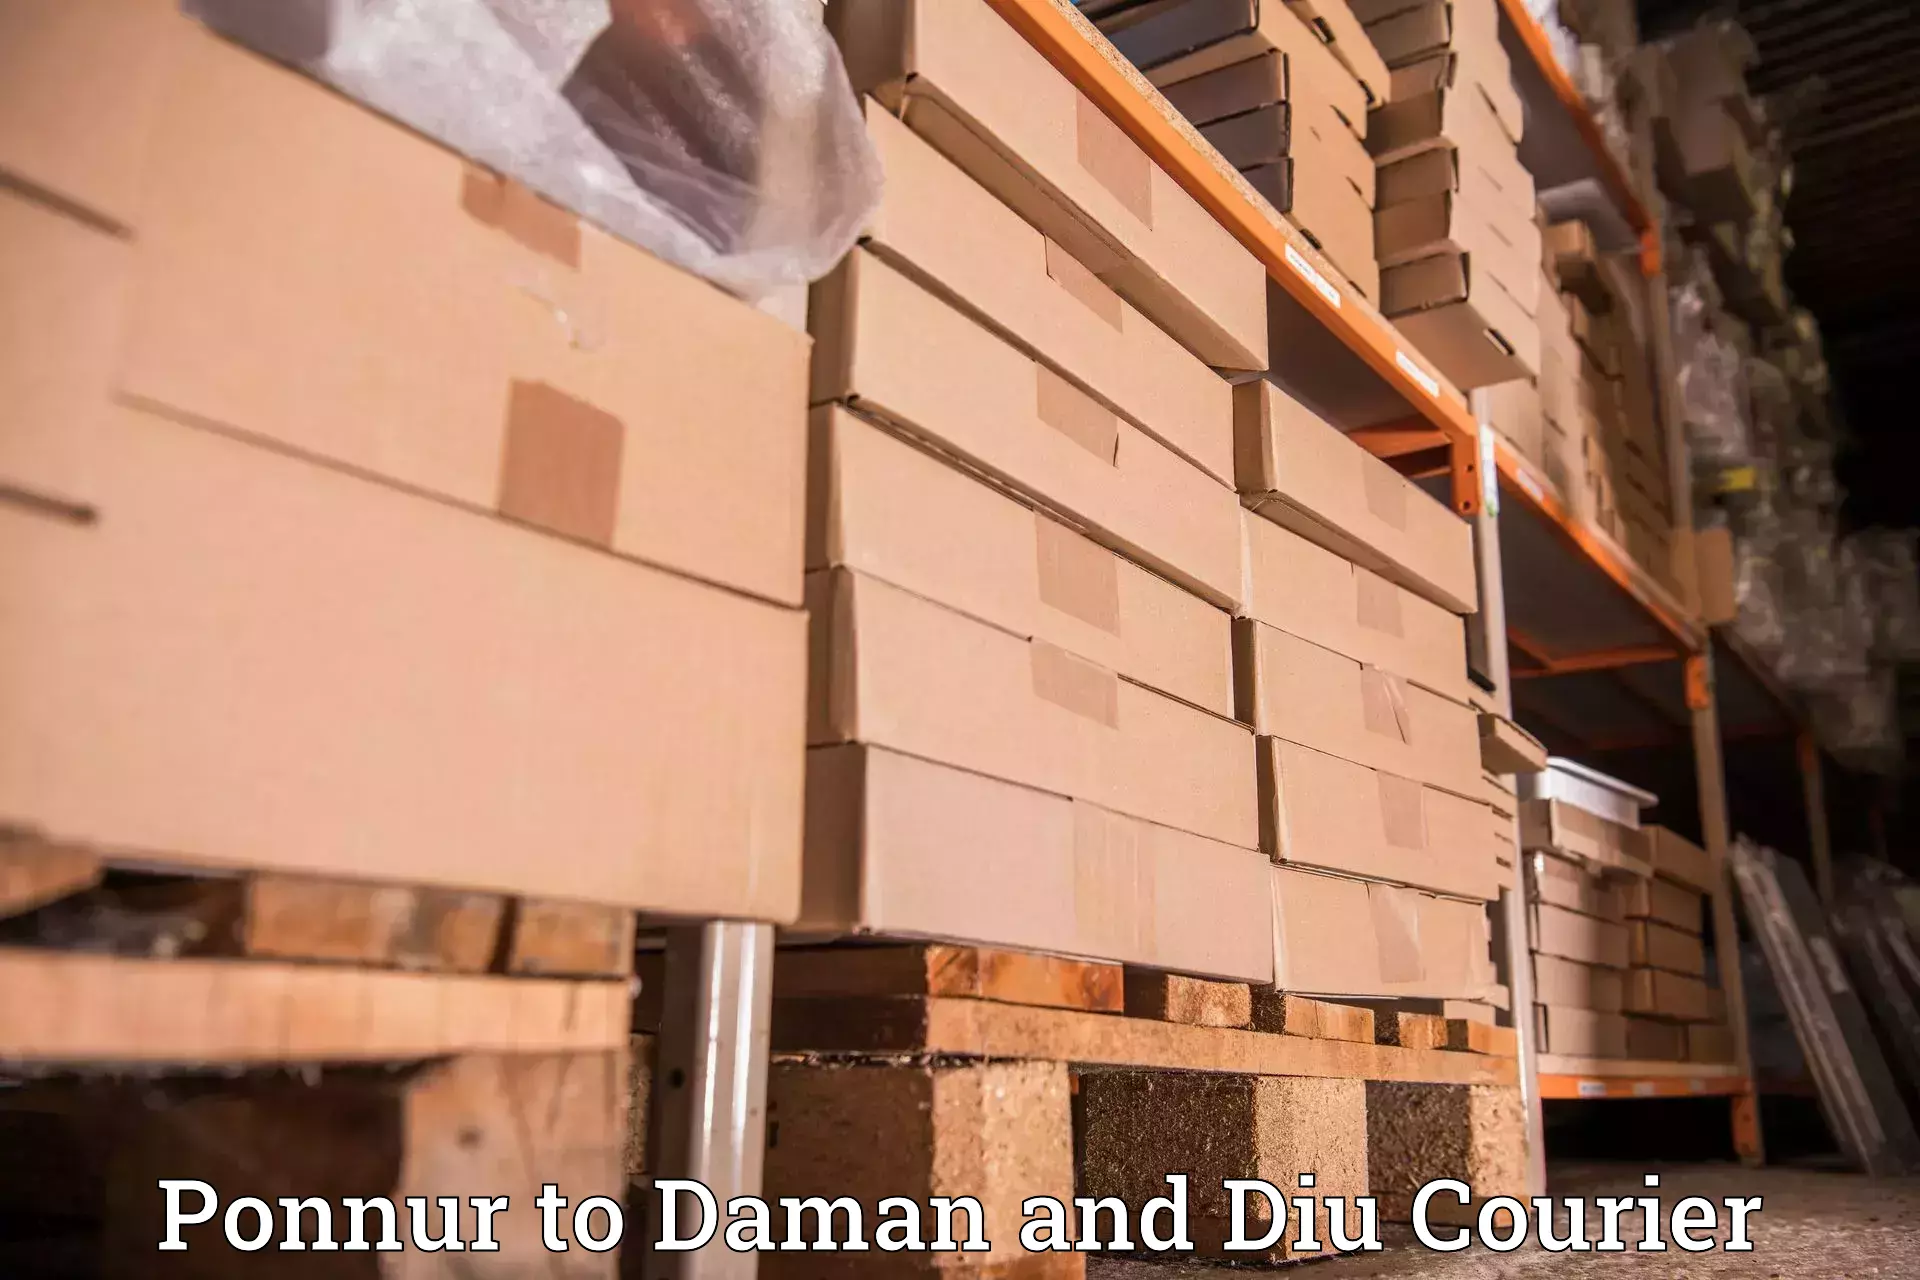 Courier service comparison Ponnur to Daman